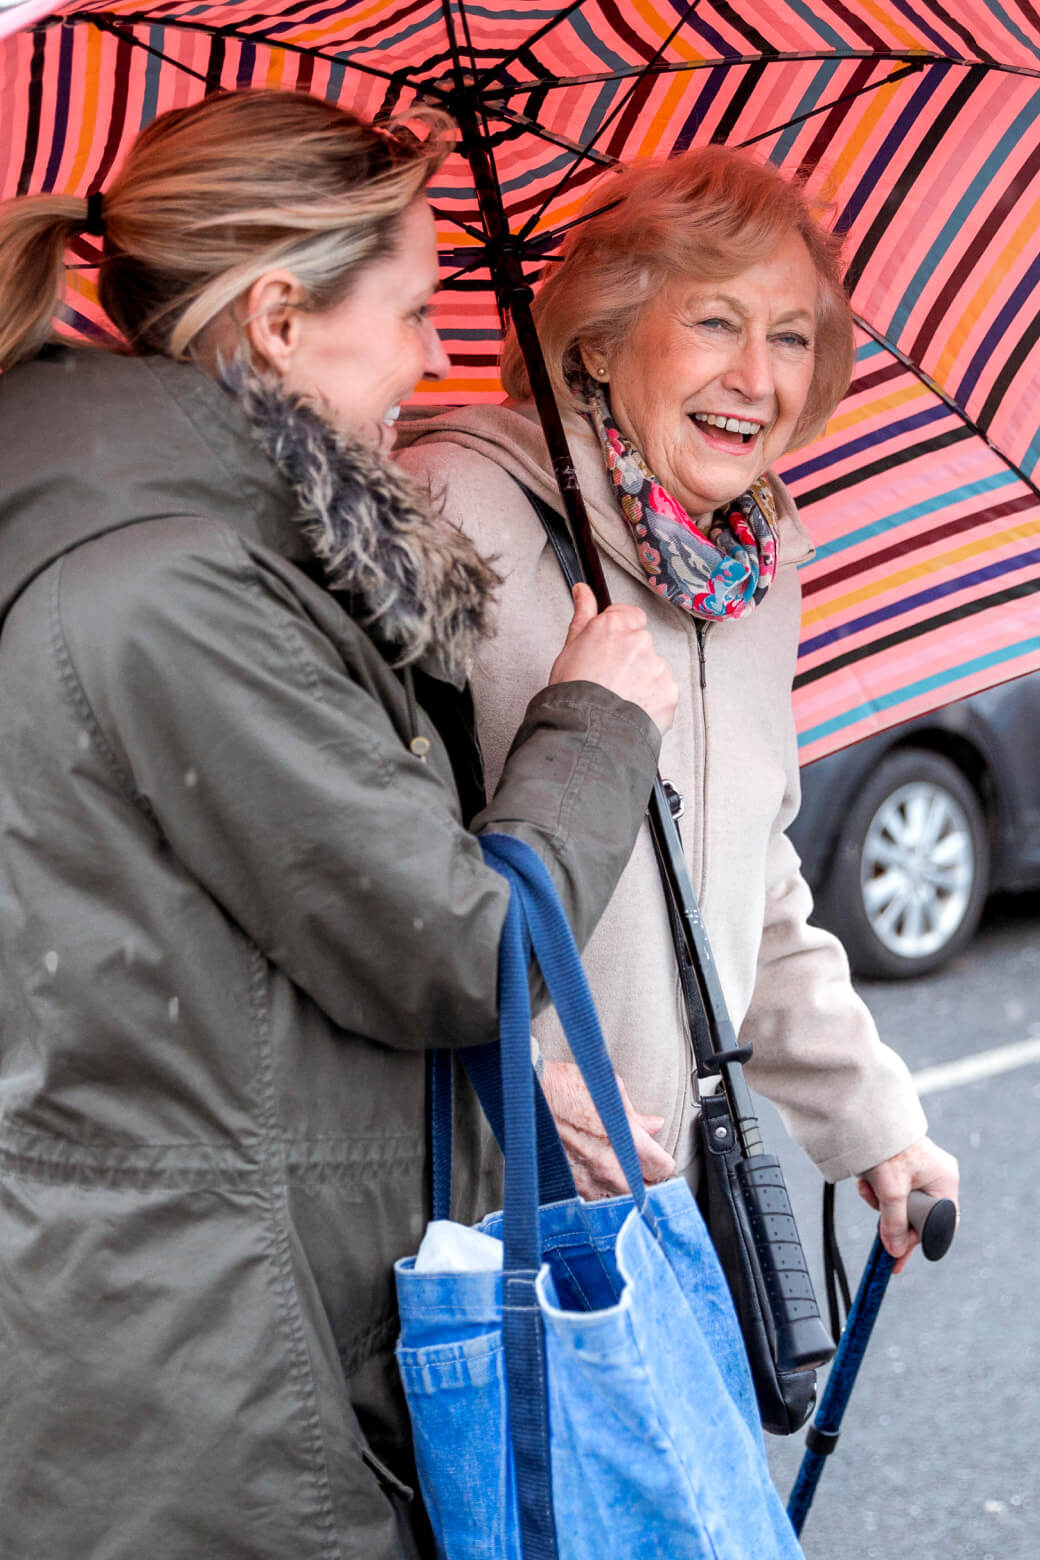 A Papa Pal holding an umbrella for an elderly woman